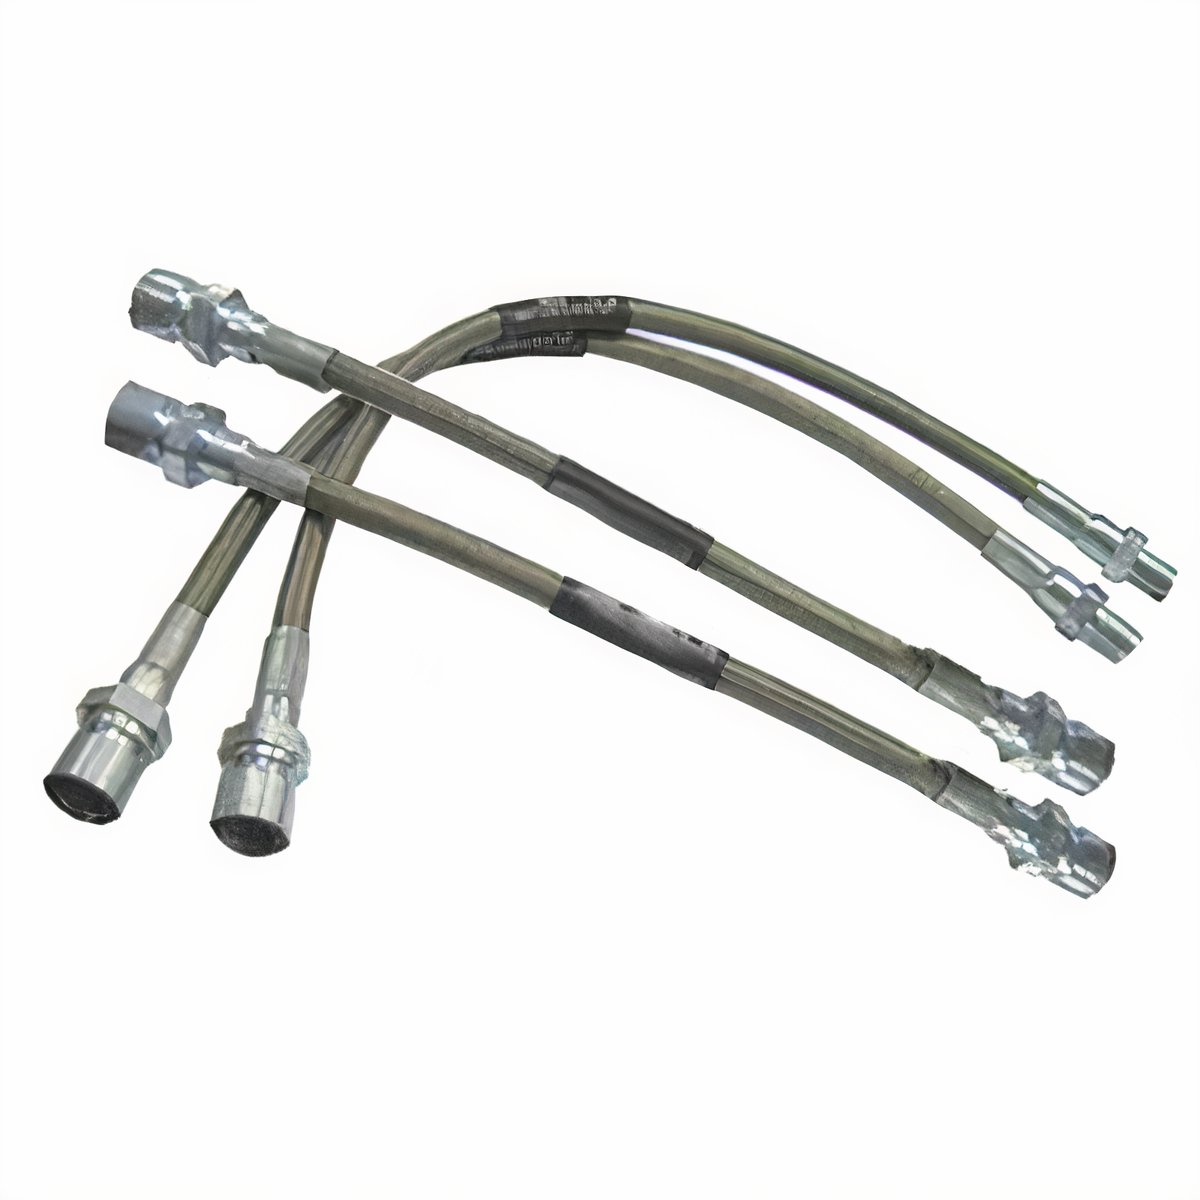 https://www.jbugs.com/store/graphics/00000001/5586-braided-stainless-steel-brake-line-kit-65-68-main.jpg